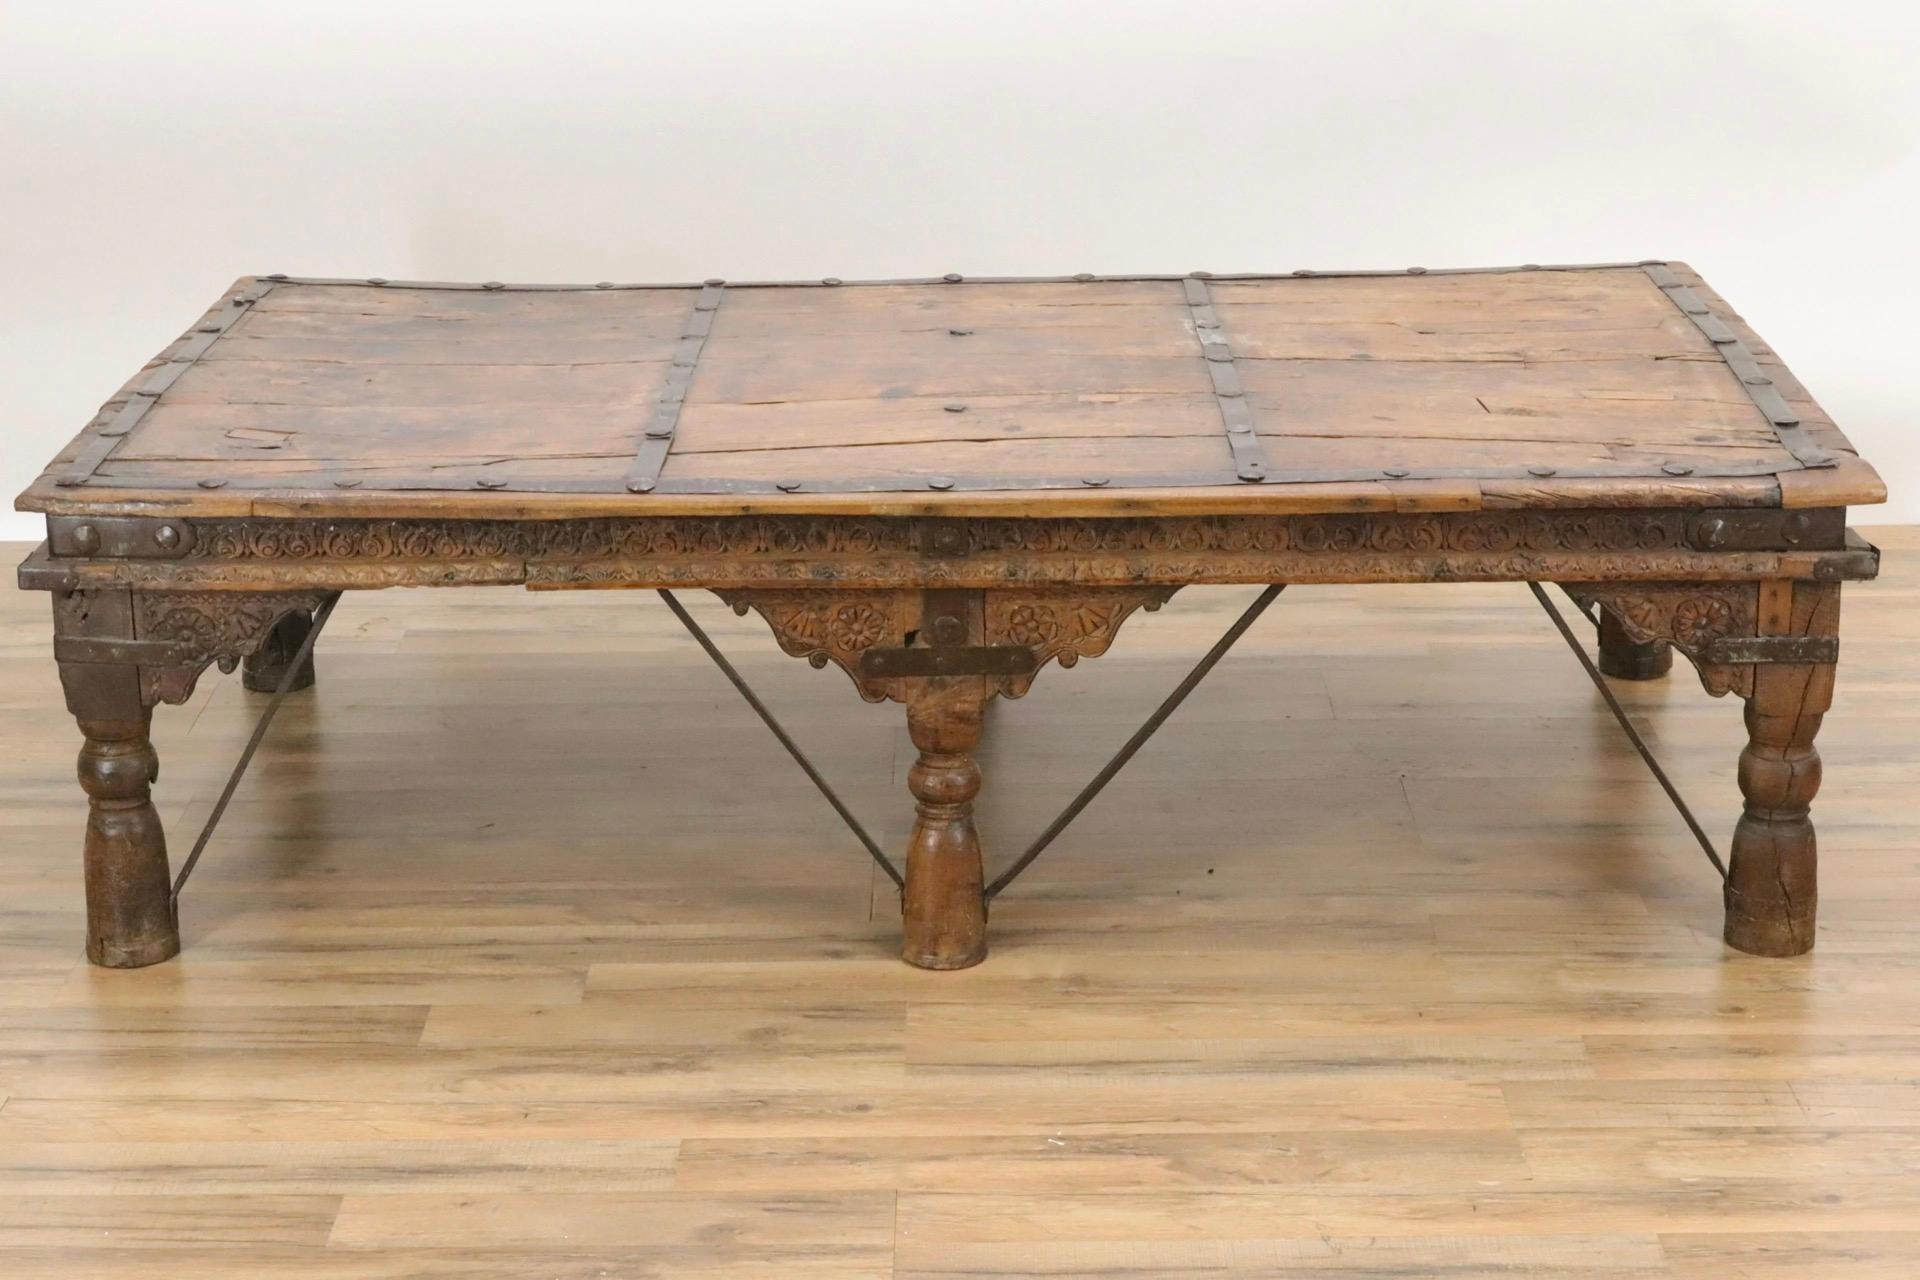 Diese große und beeindruckende Tischplatte ist aus ungewöhnlich geschwungenen Holzstücken gefertigt. Der Tisch wird von sechs gedrechselten Beinen und eisernen Streben gestützt, die Schürze ist mit kunstvollen Schnitzereien verziert. Metallbänder